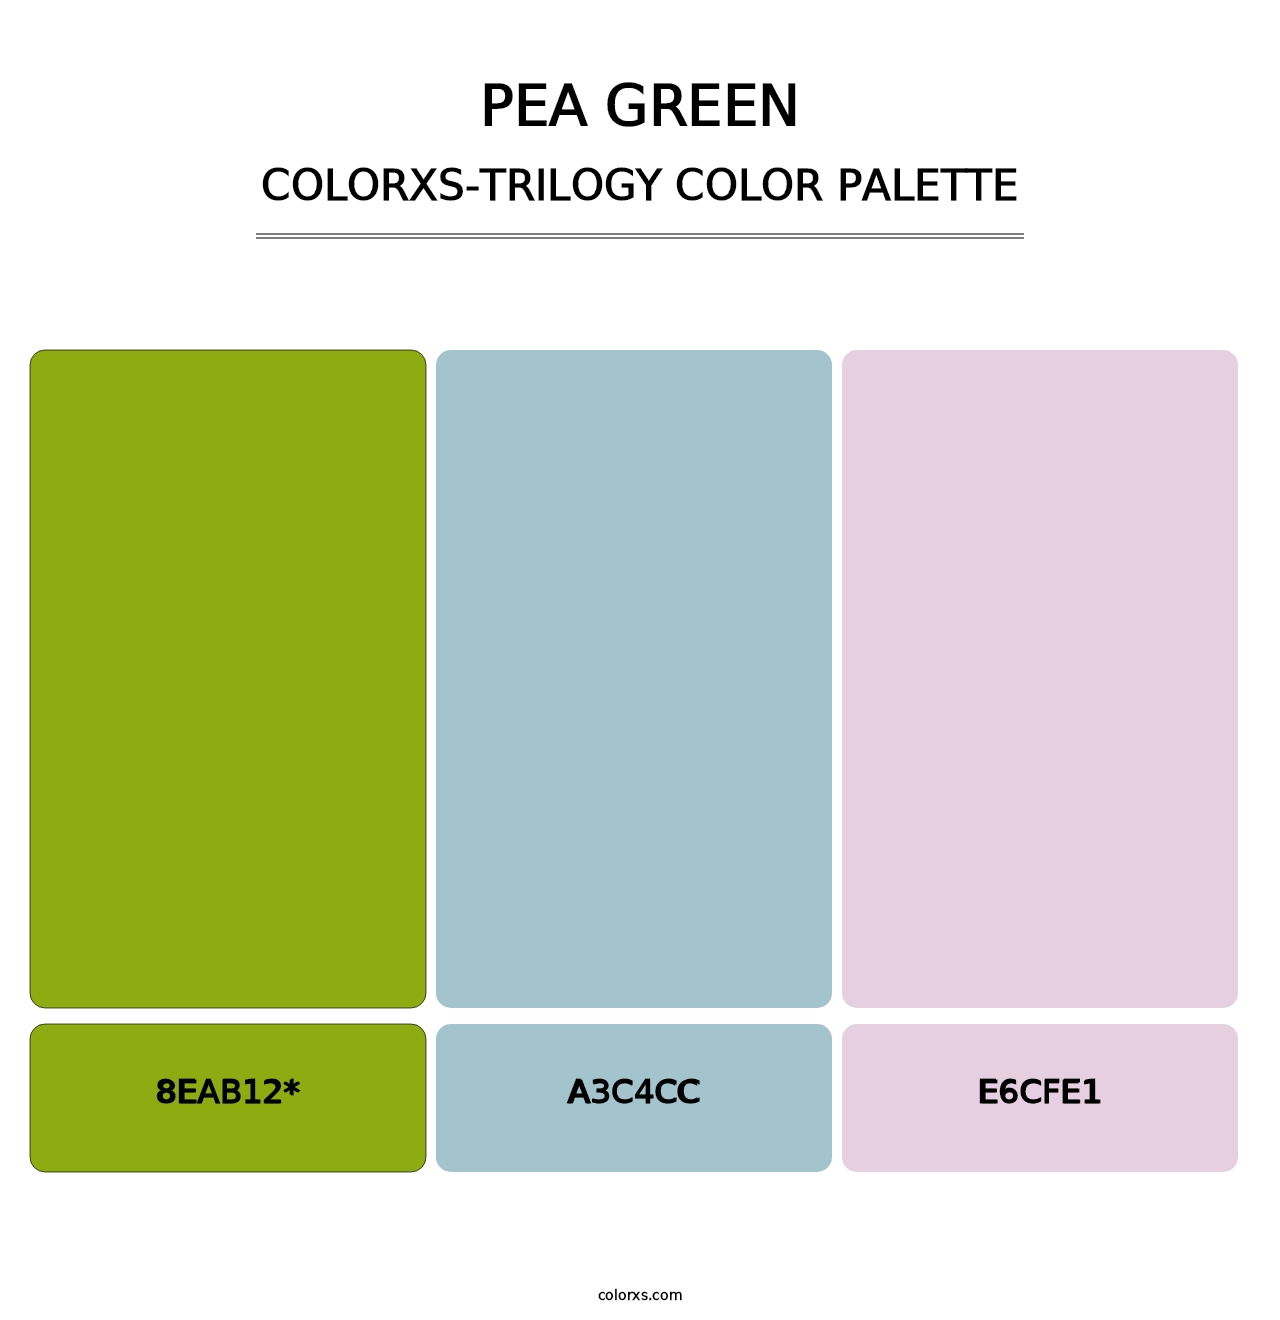 Pea Green - Colorxs Trilogy Palette